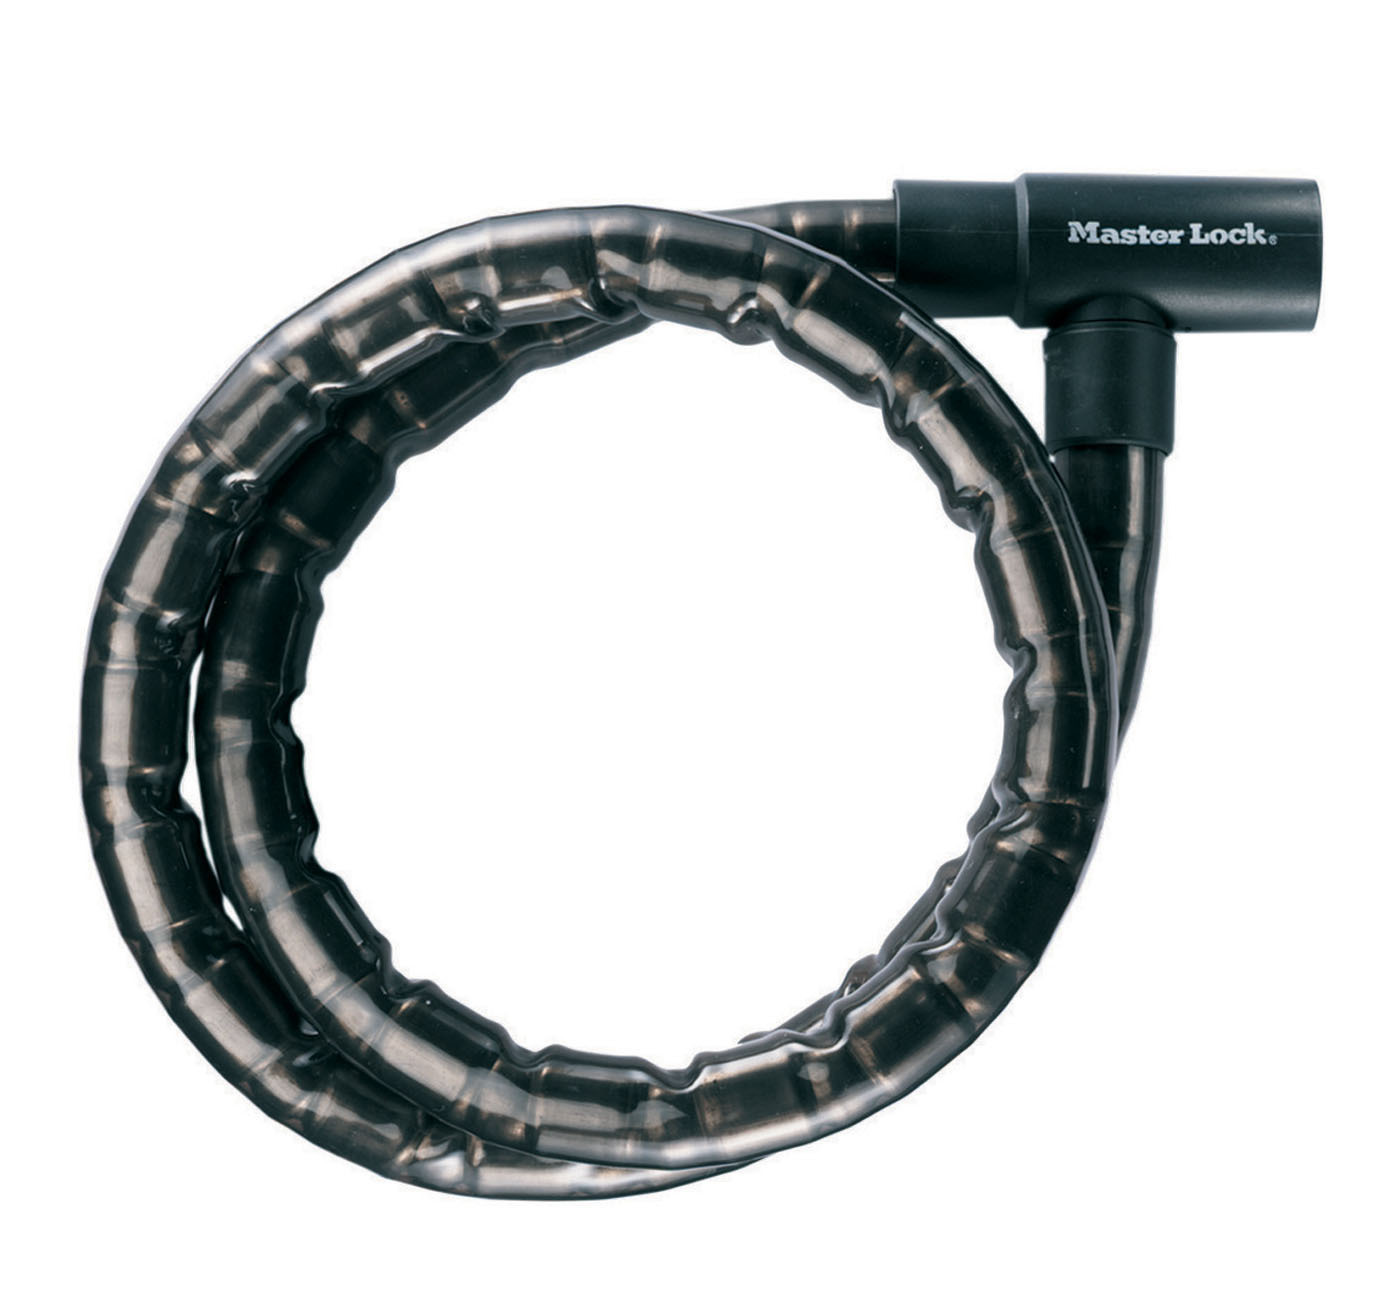 Masterlock Gepantserd kabelslot van 2 m lang met een diameter van 20 mm, met sleutels; zwart